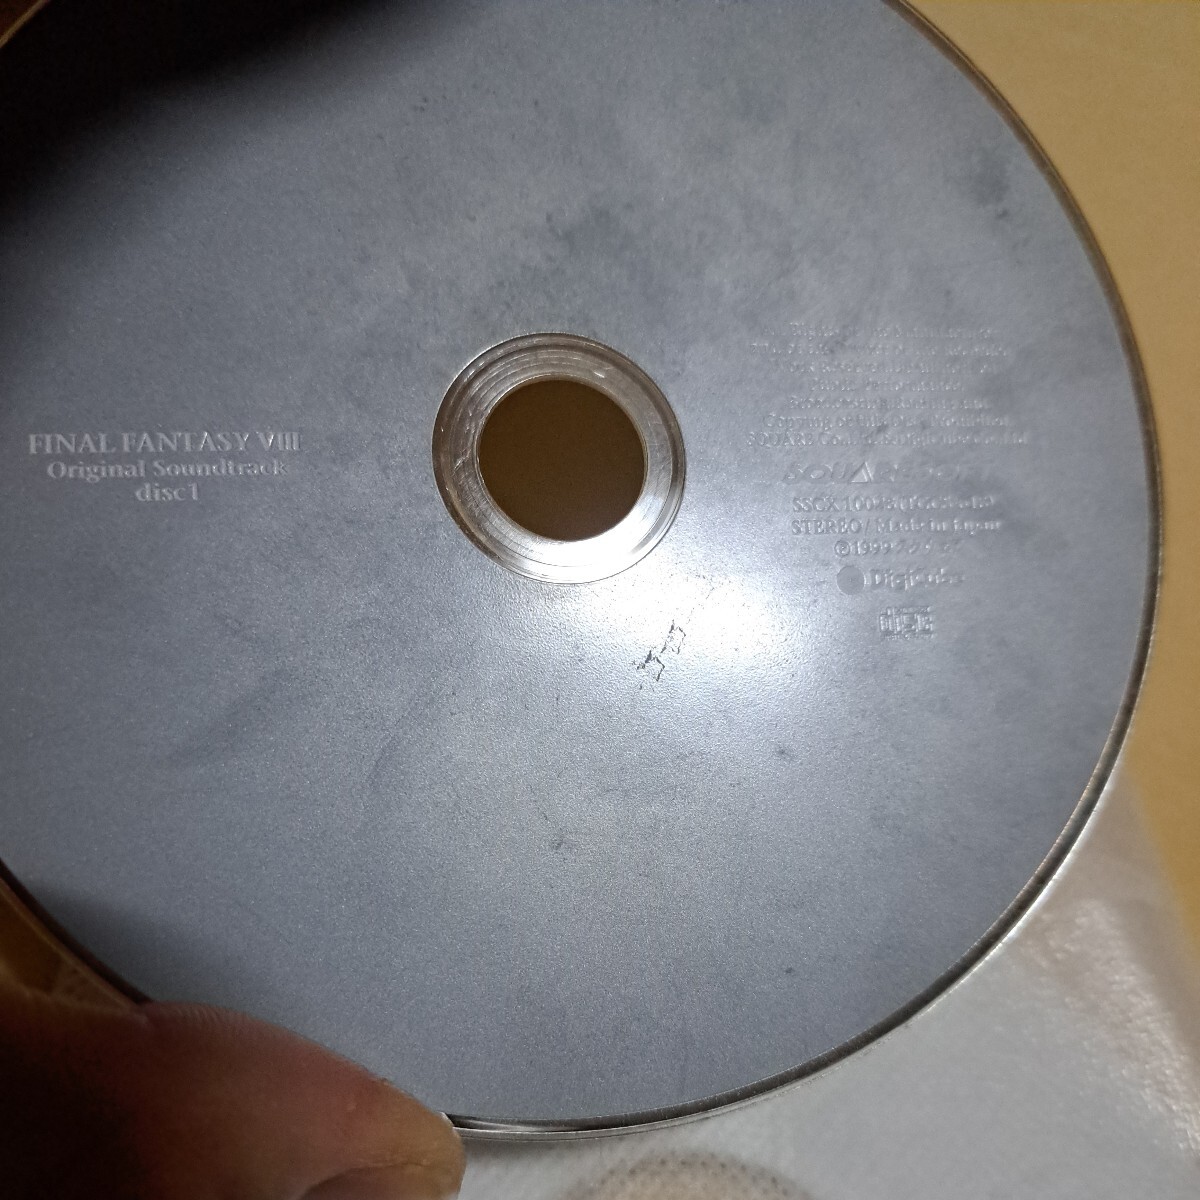  junk Final Fantasy Ⅷ Original Soundtrack disk 1 only 